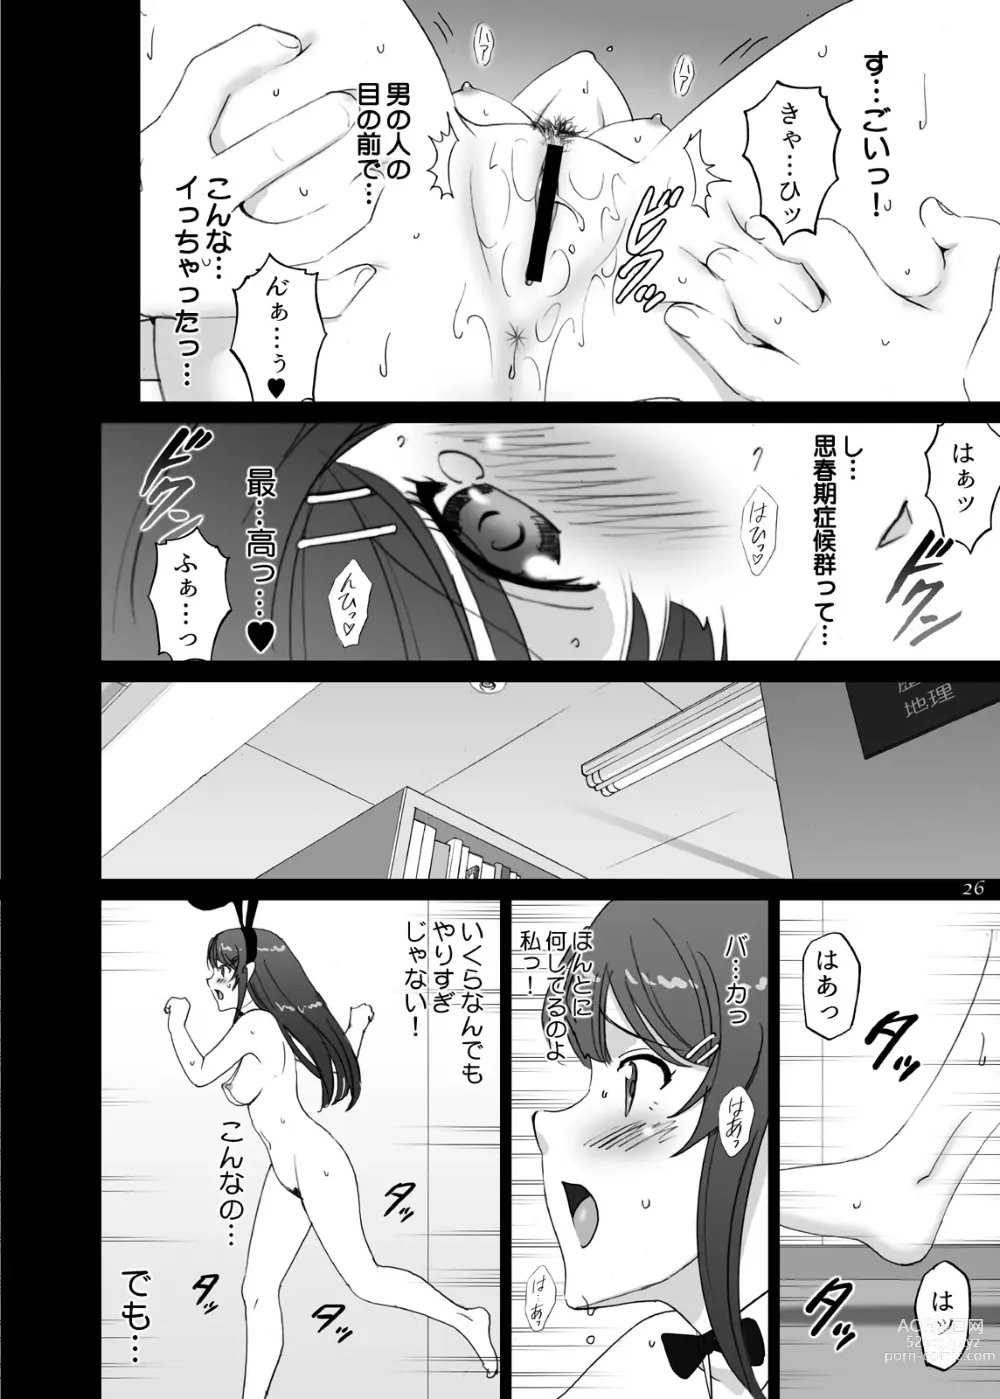 Page 26 of doujinshi Seishun Bunny Senpai wa Hadaka Haikai no Yume o Minai